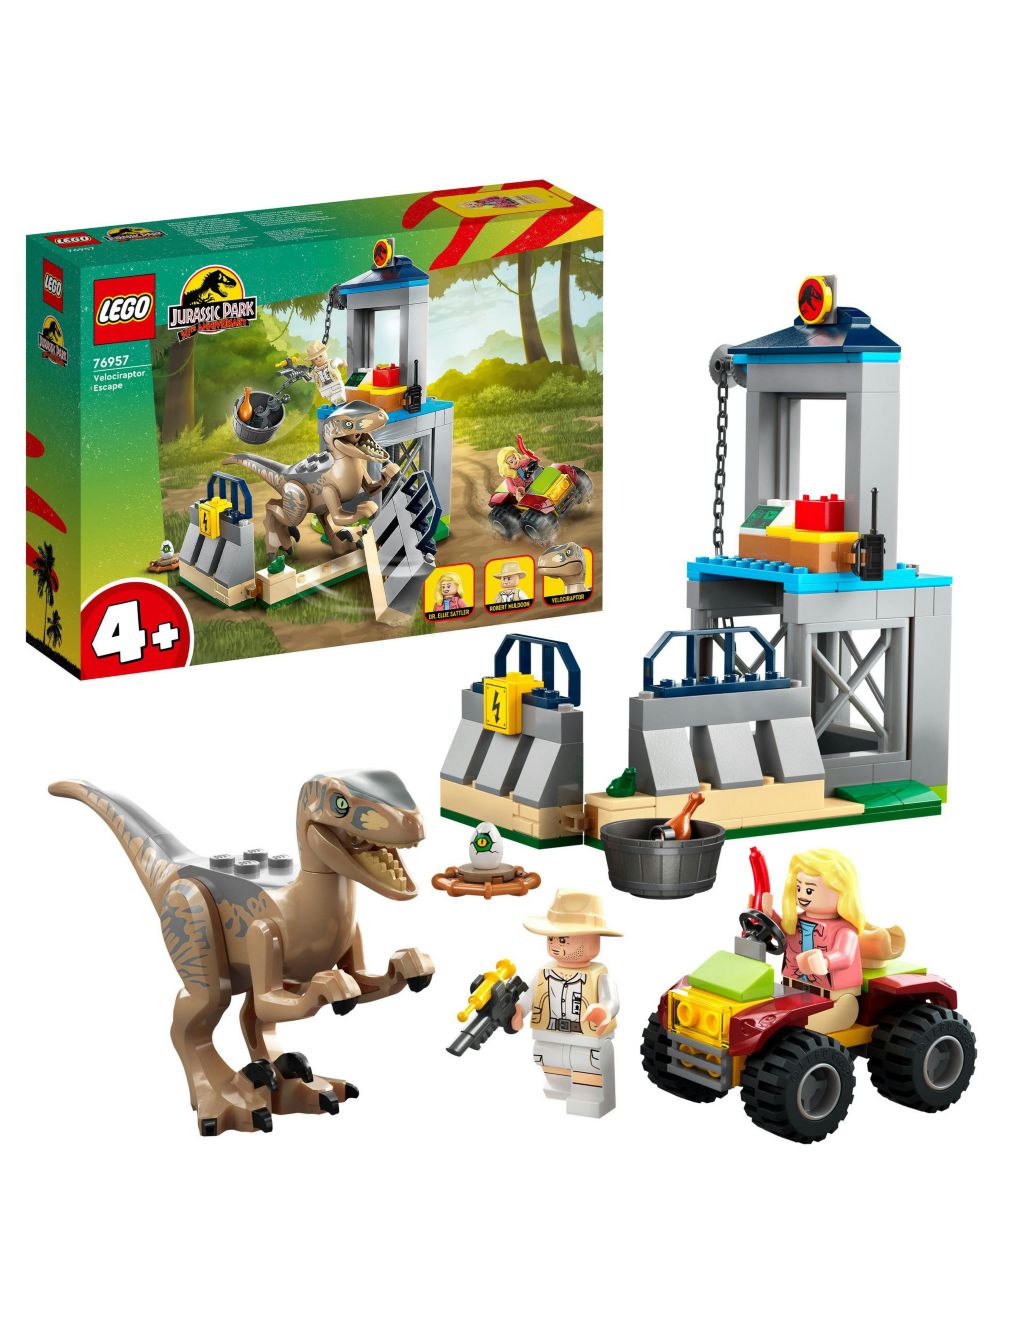 LEGO Jurassic Park Velociraptor Escape Toy Set 
76957 (4+ Yrs)